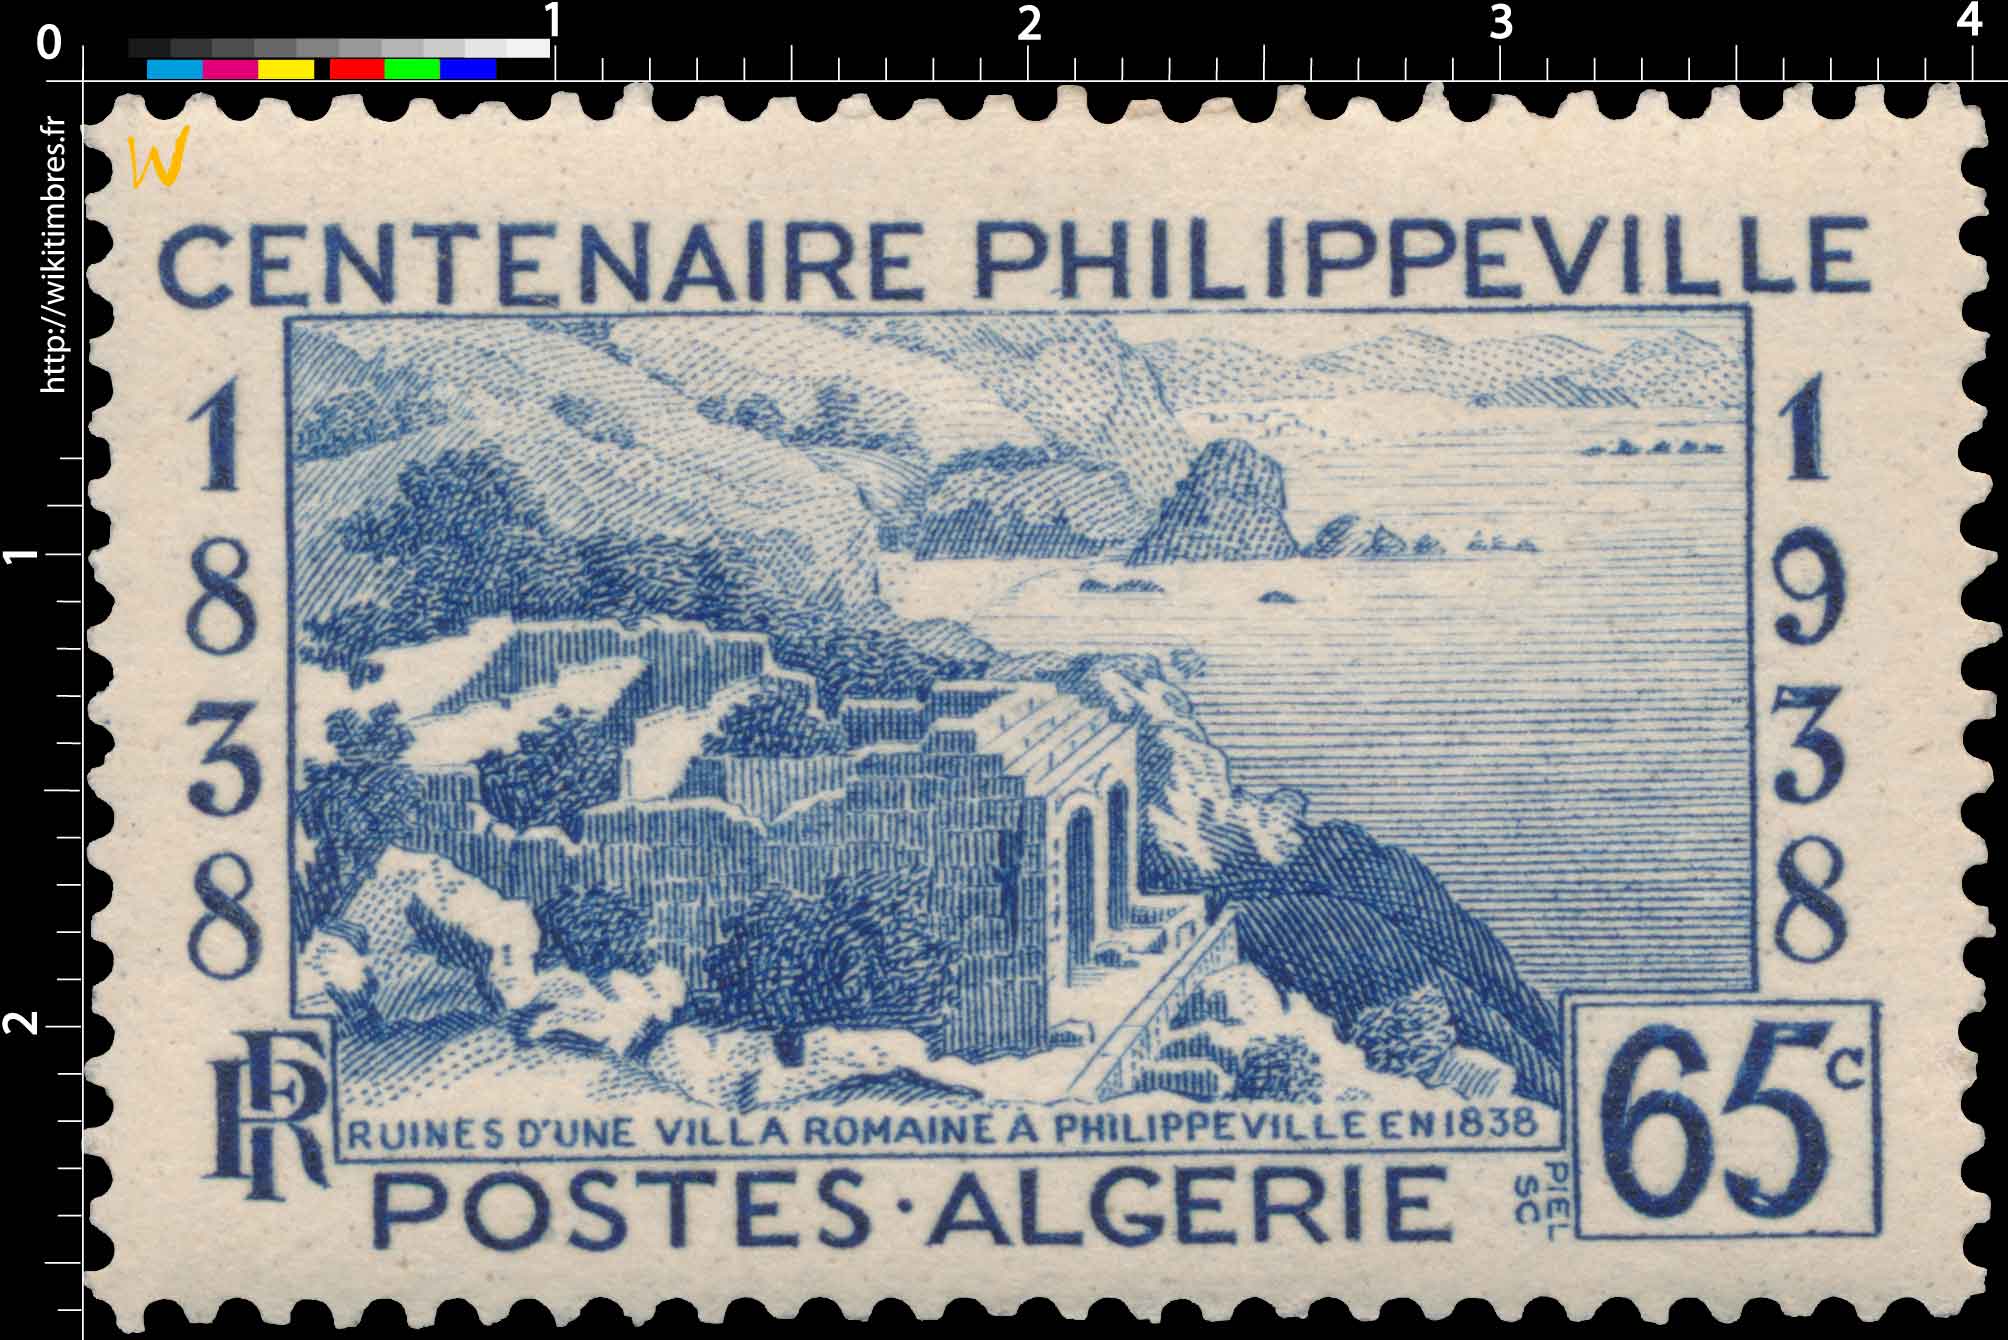 Algérie - Ruine d'une villa romaine à Philippeville en 1838 - centenaire Philippeville